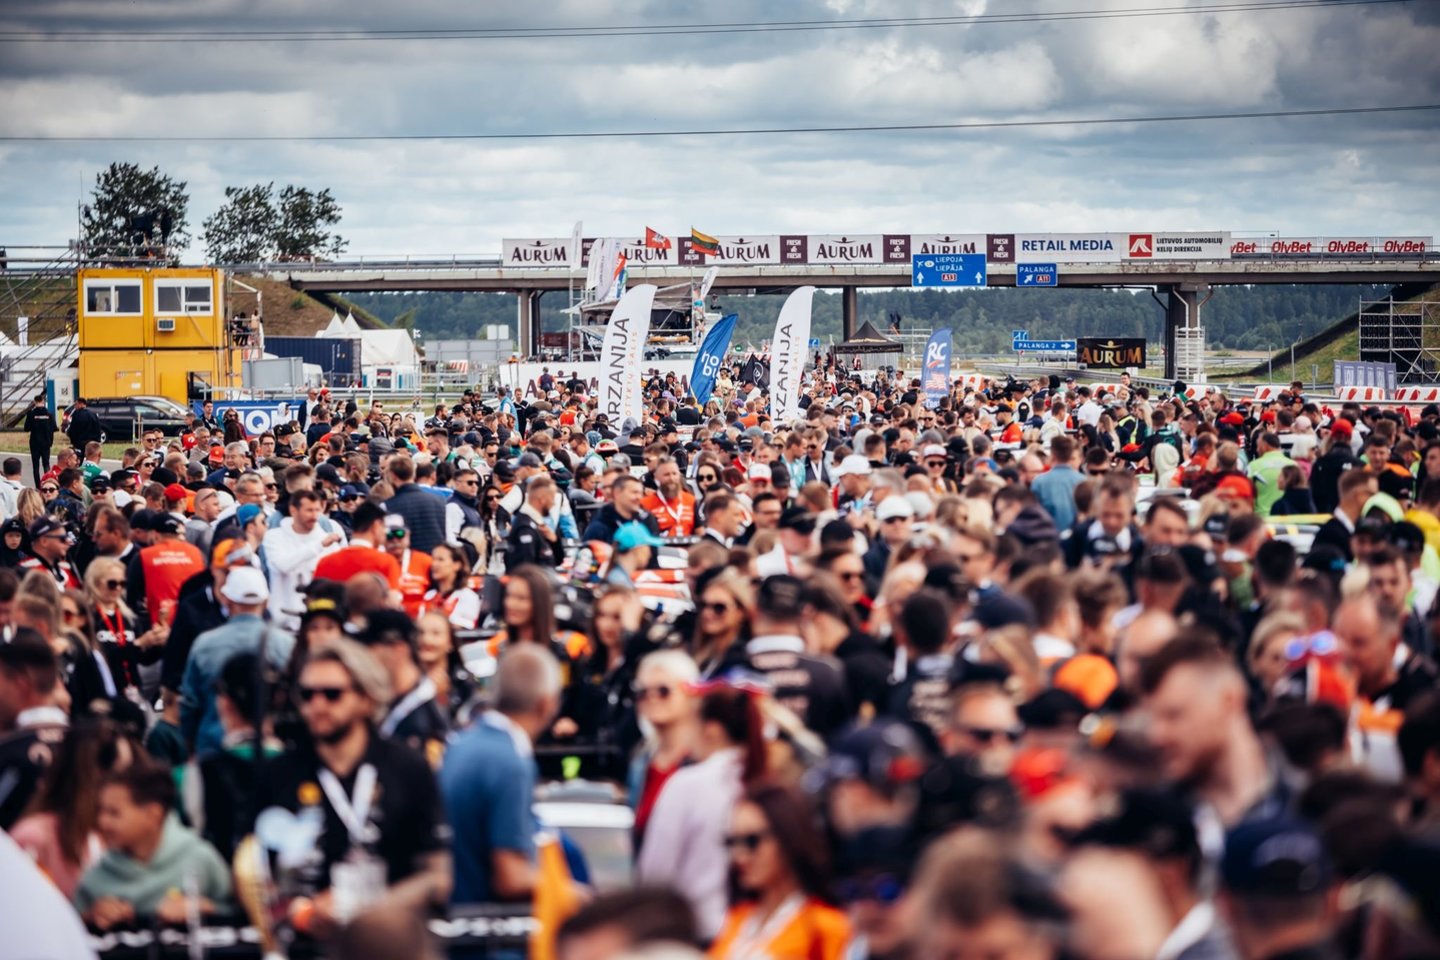 Liepos 16 d. istorija tapo 23 ilgų nuotolių automobilių lenktynės Palangoje, kurias VšĮ „Promo events“ be pertraukų rengia nuo pat 2000 m.<br>Vytauto Pilkausko ir Andriaus Lauciaus nuotr.